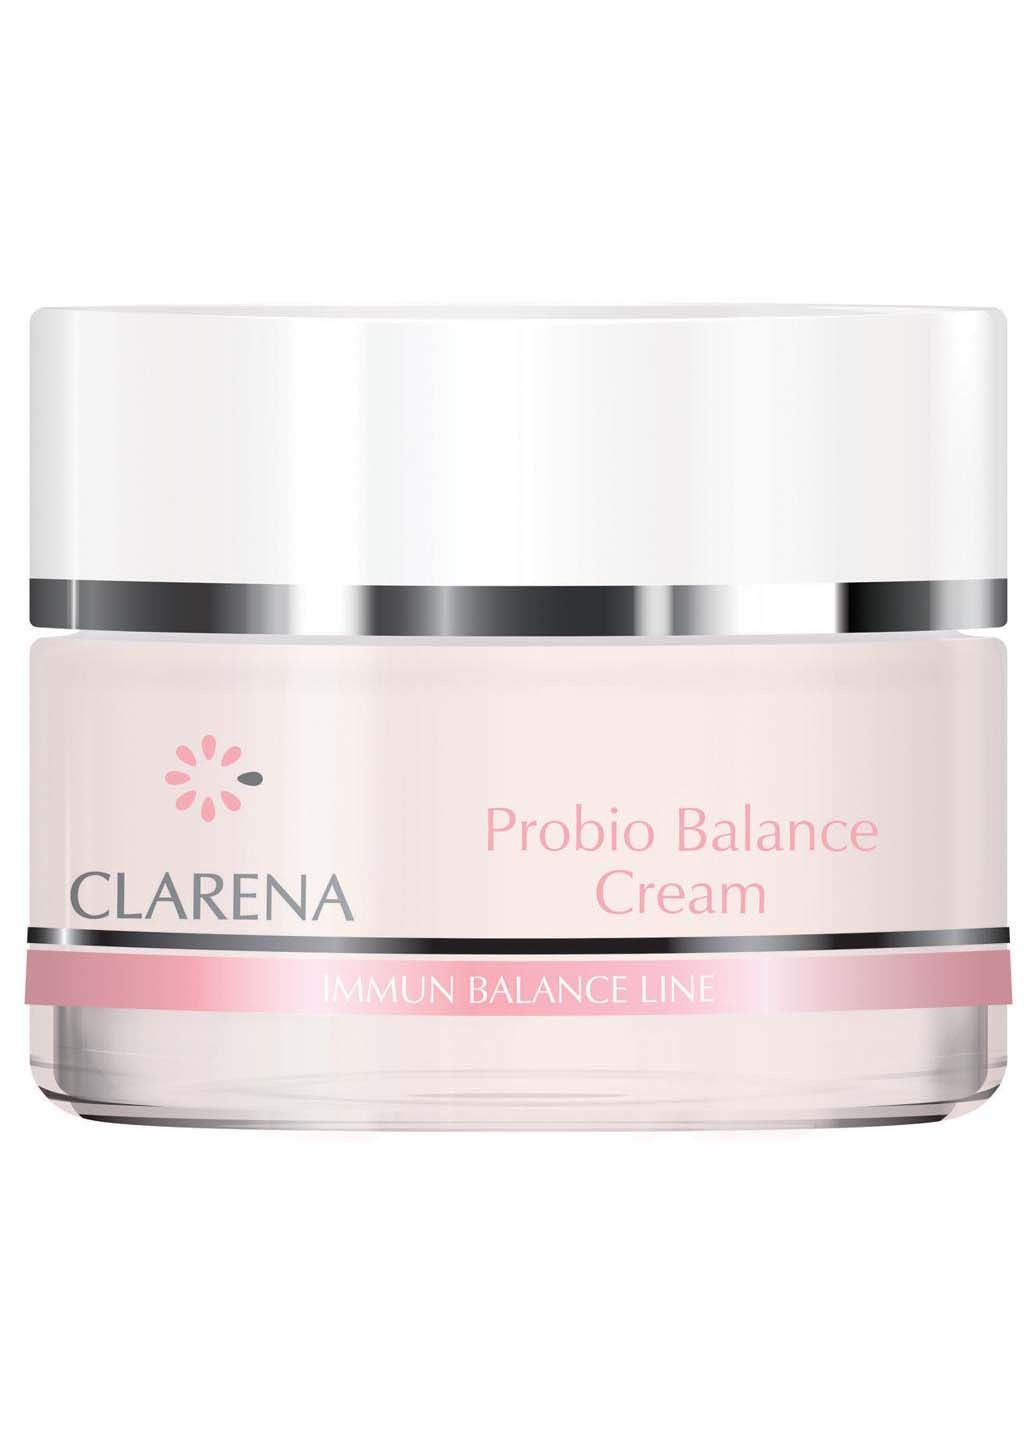 Крем Immun Balance Line Probio Balance Cream для сухой и чувствительной кожи лица 50 мл Clarena (280918125)